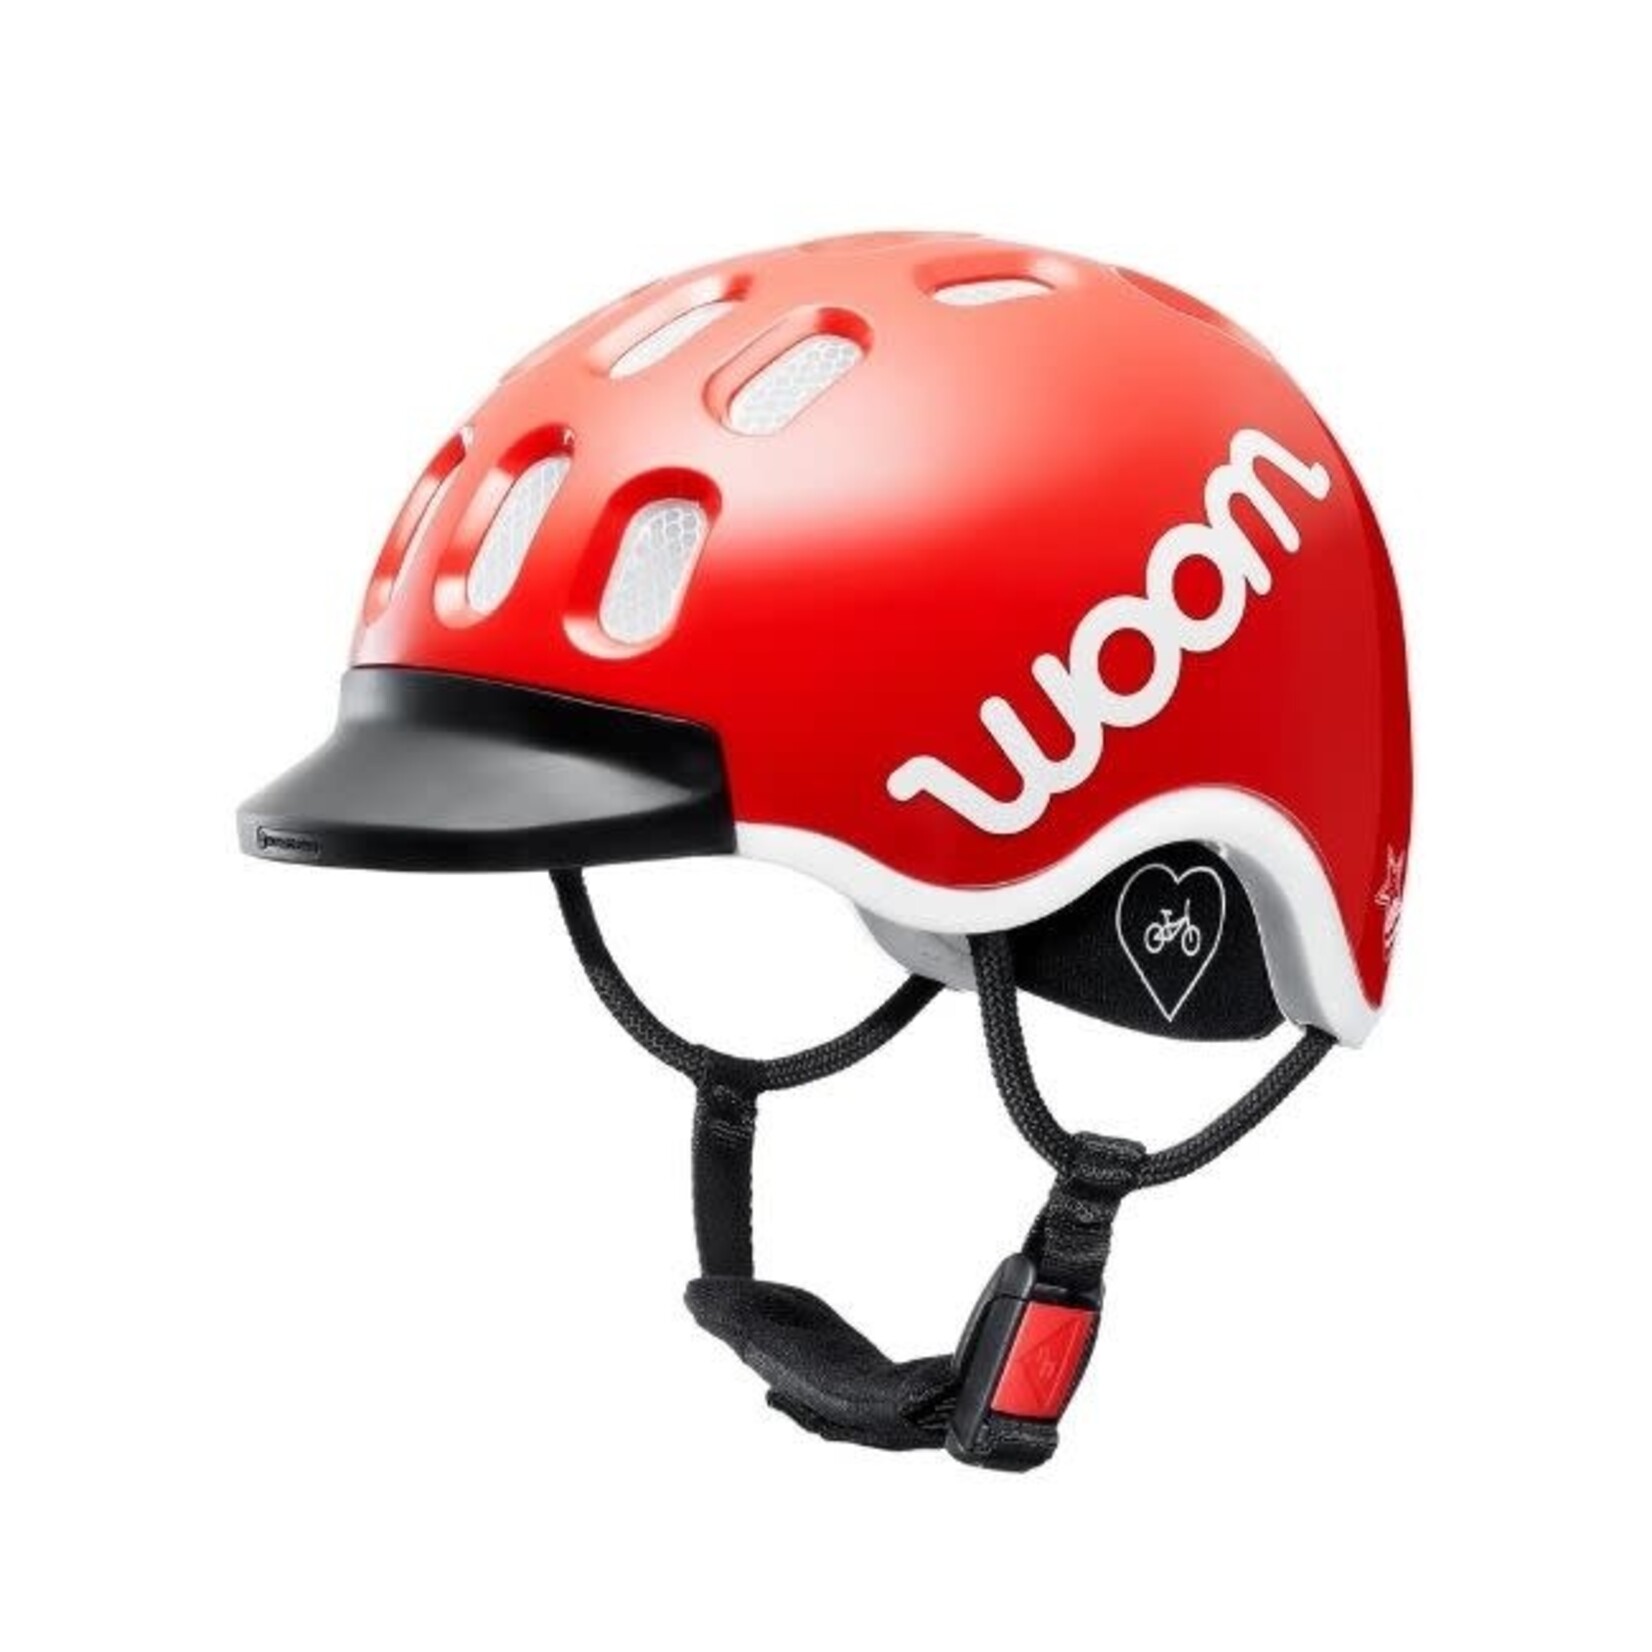 woom woom helmet - IN STORE PICK UP ONLY